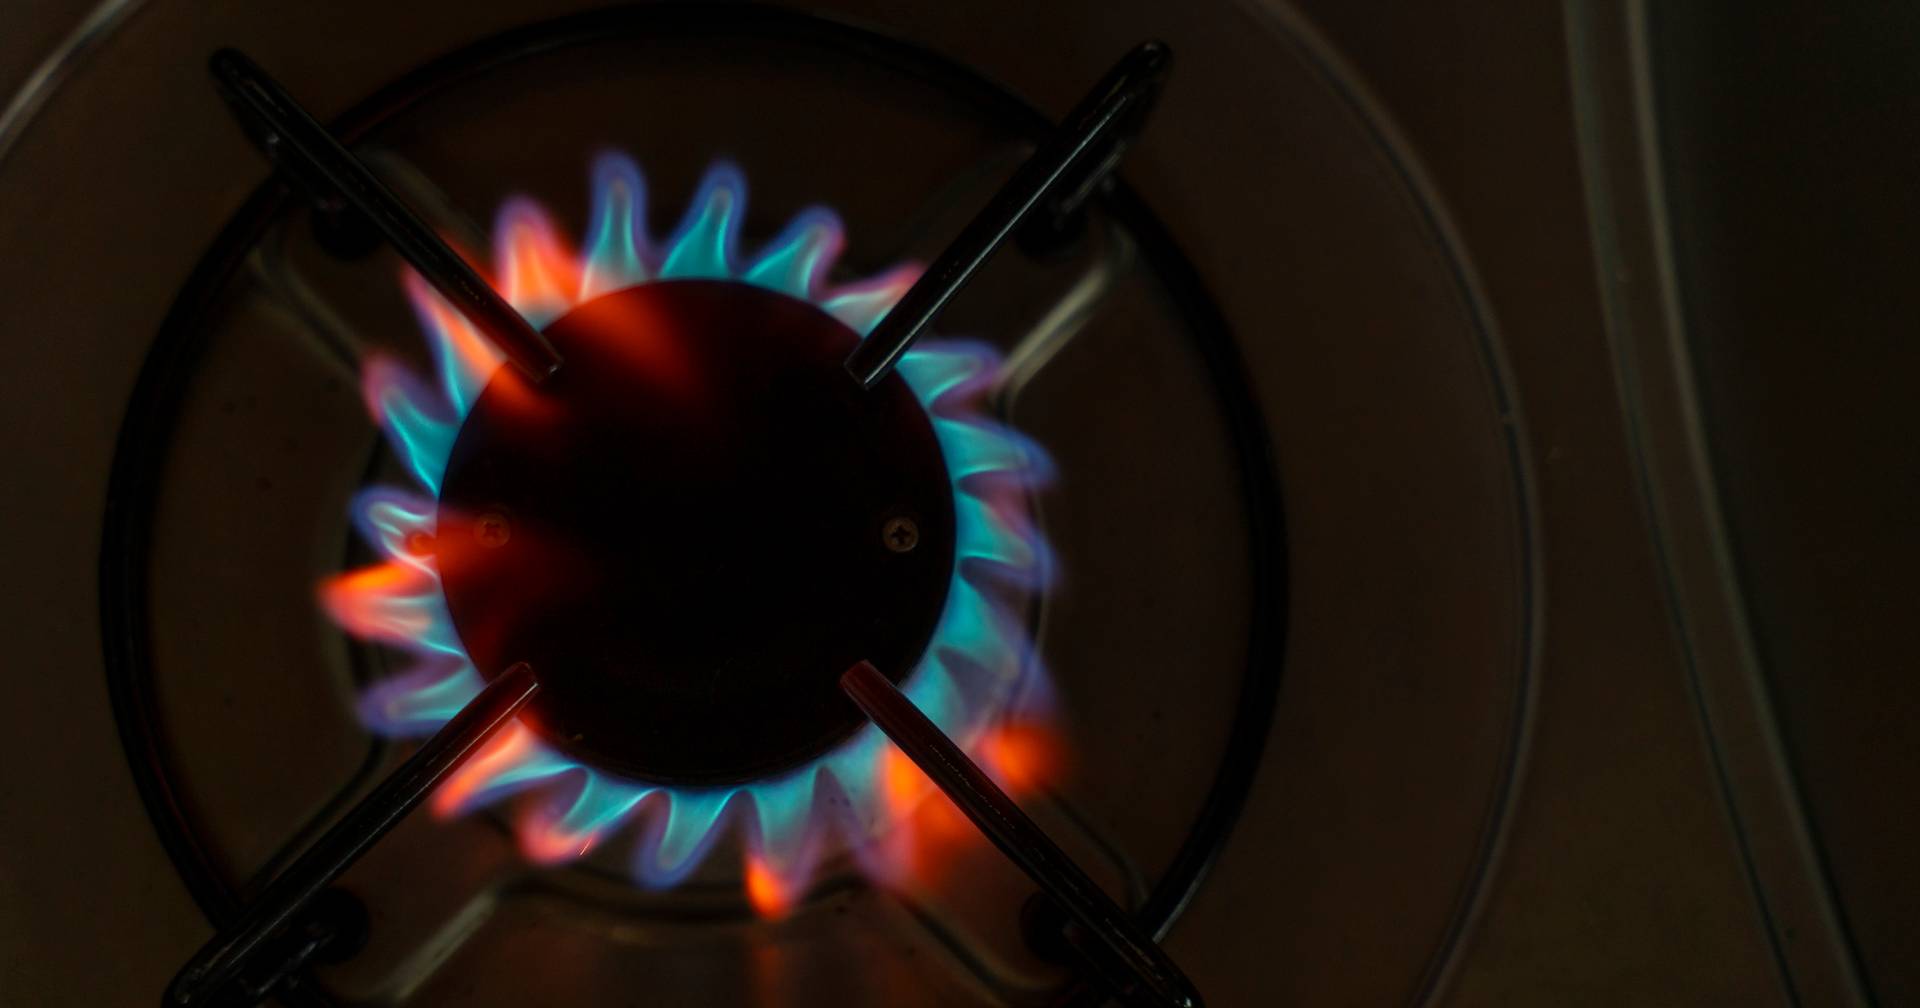 Galp também vai aumentar preços do gás natural em outubro